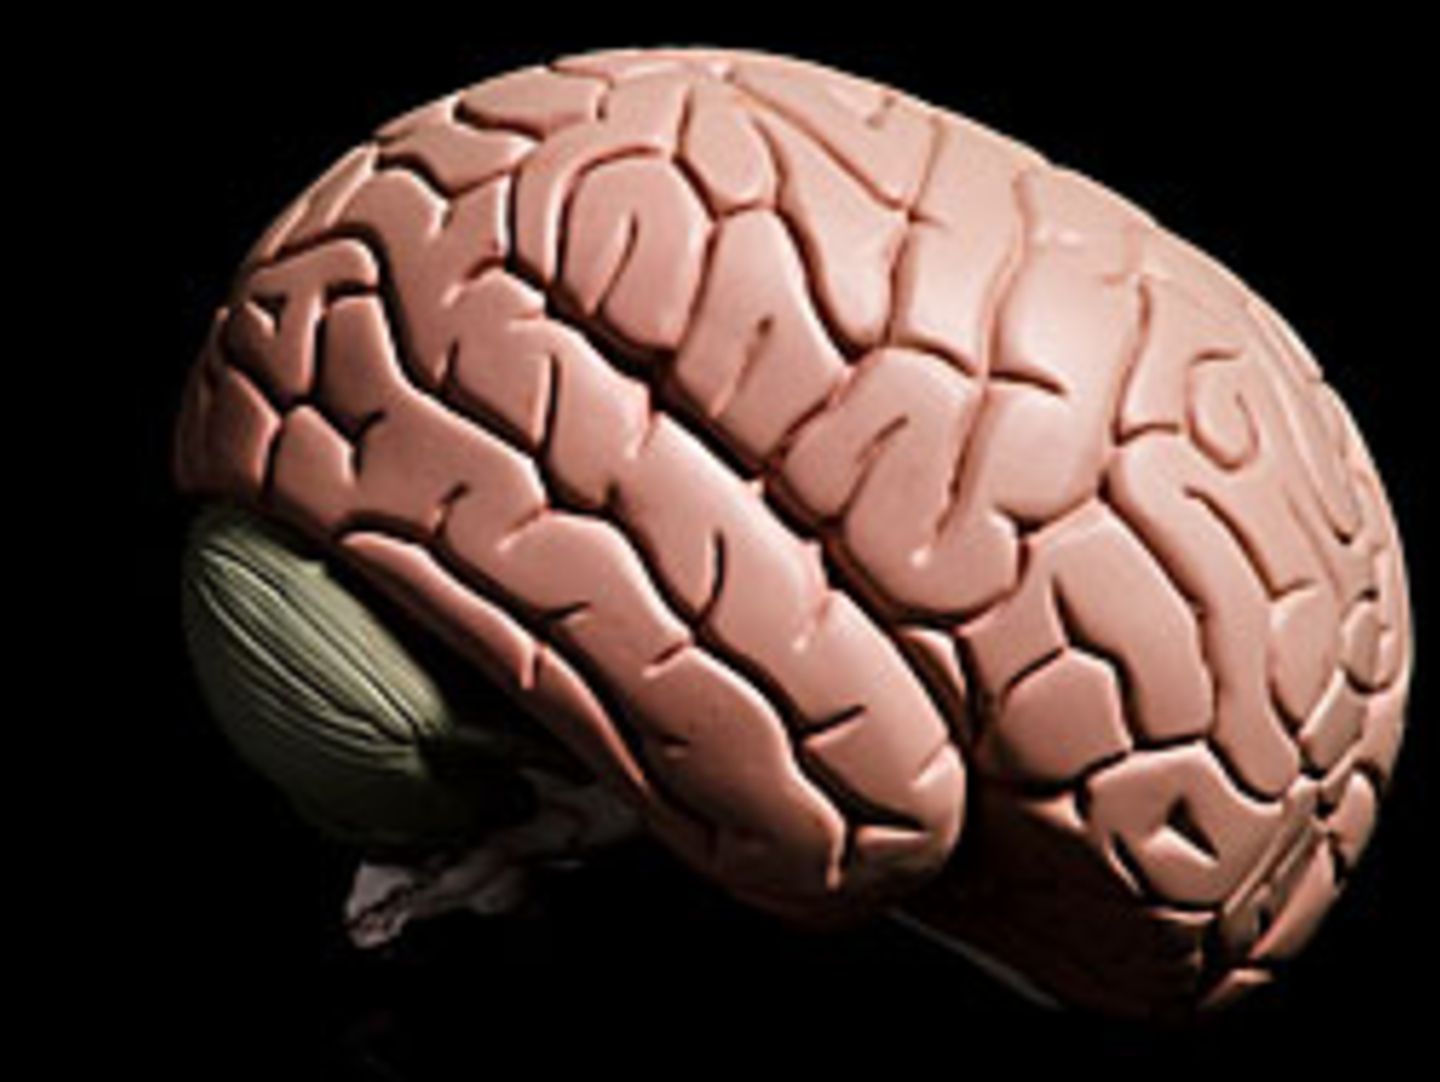 Bei Krankheiten wie Autismus oder Schizophrenie sind die Gehirne nicht nur sprichwörtlich aus dem Takt gekommen